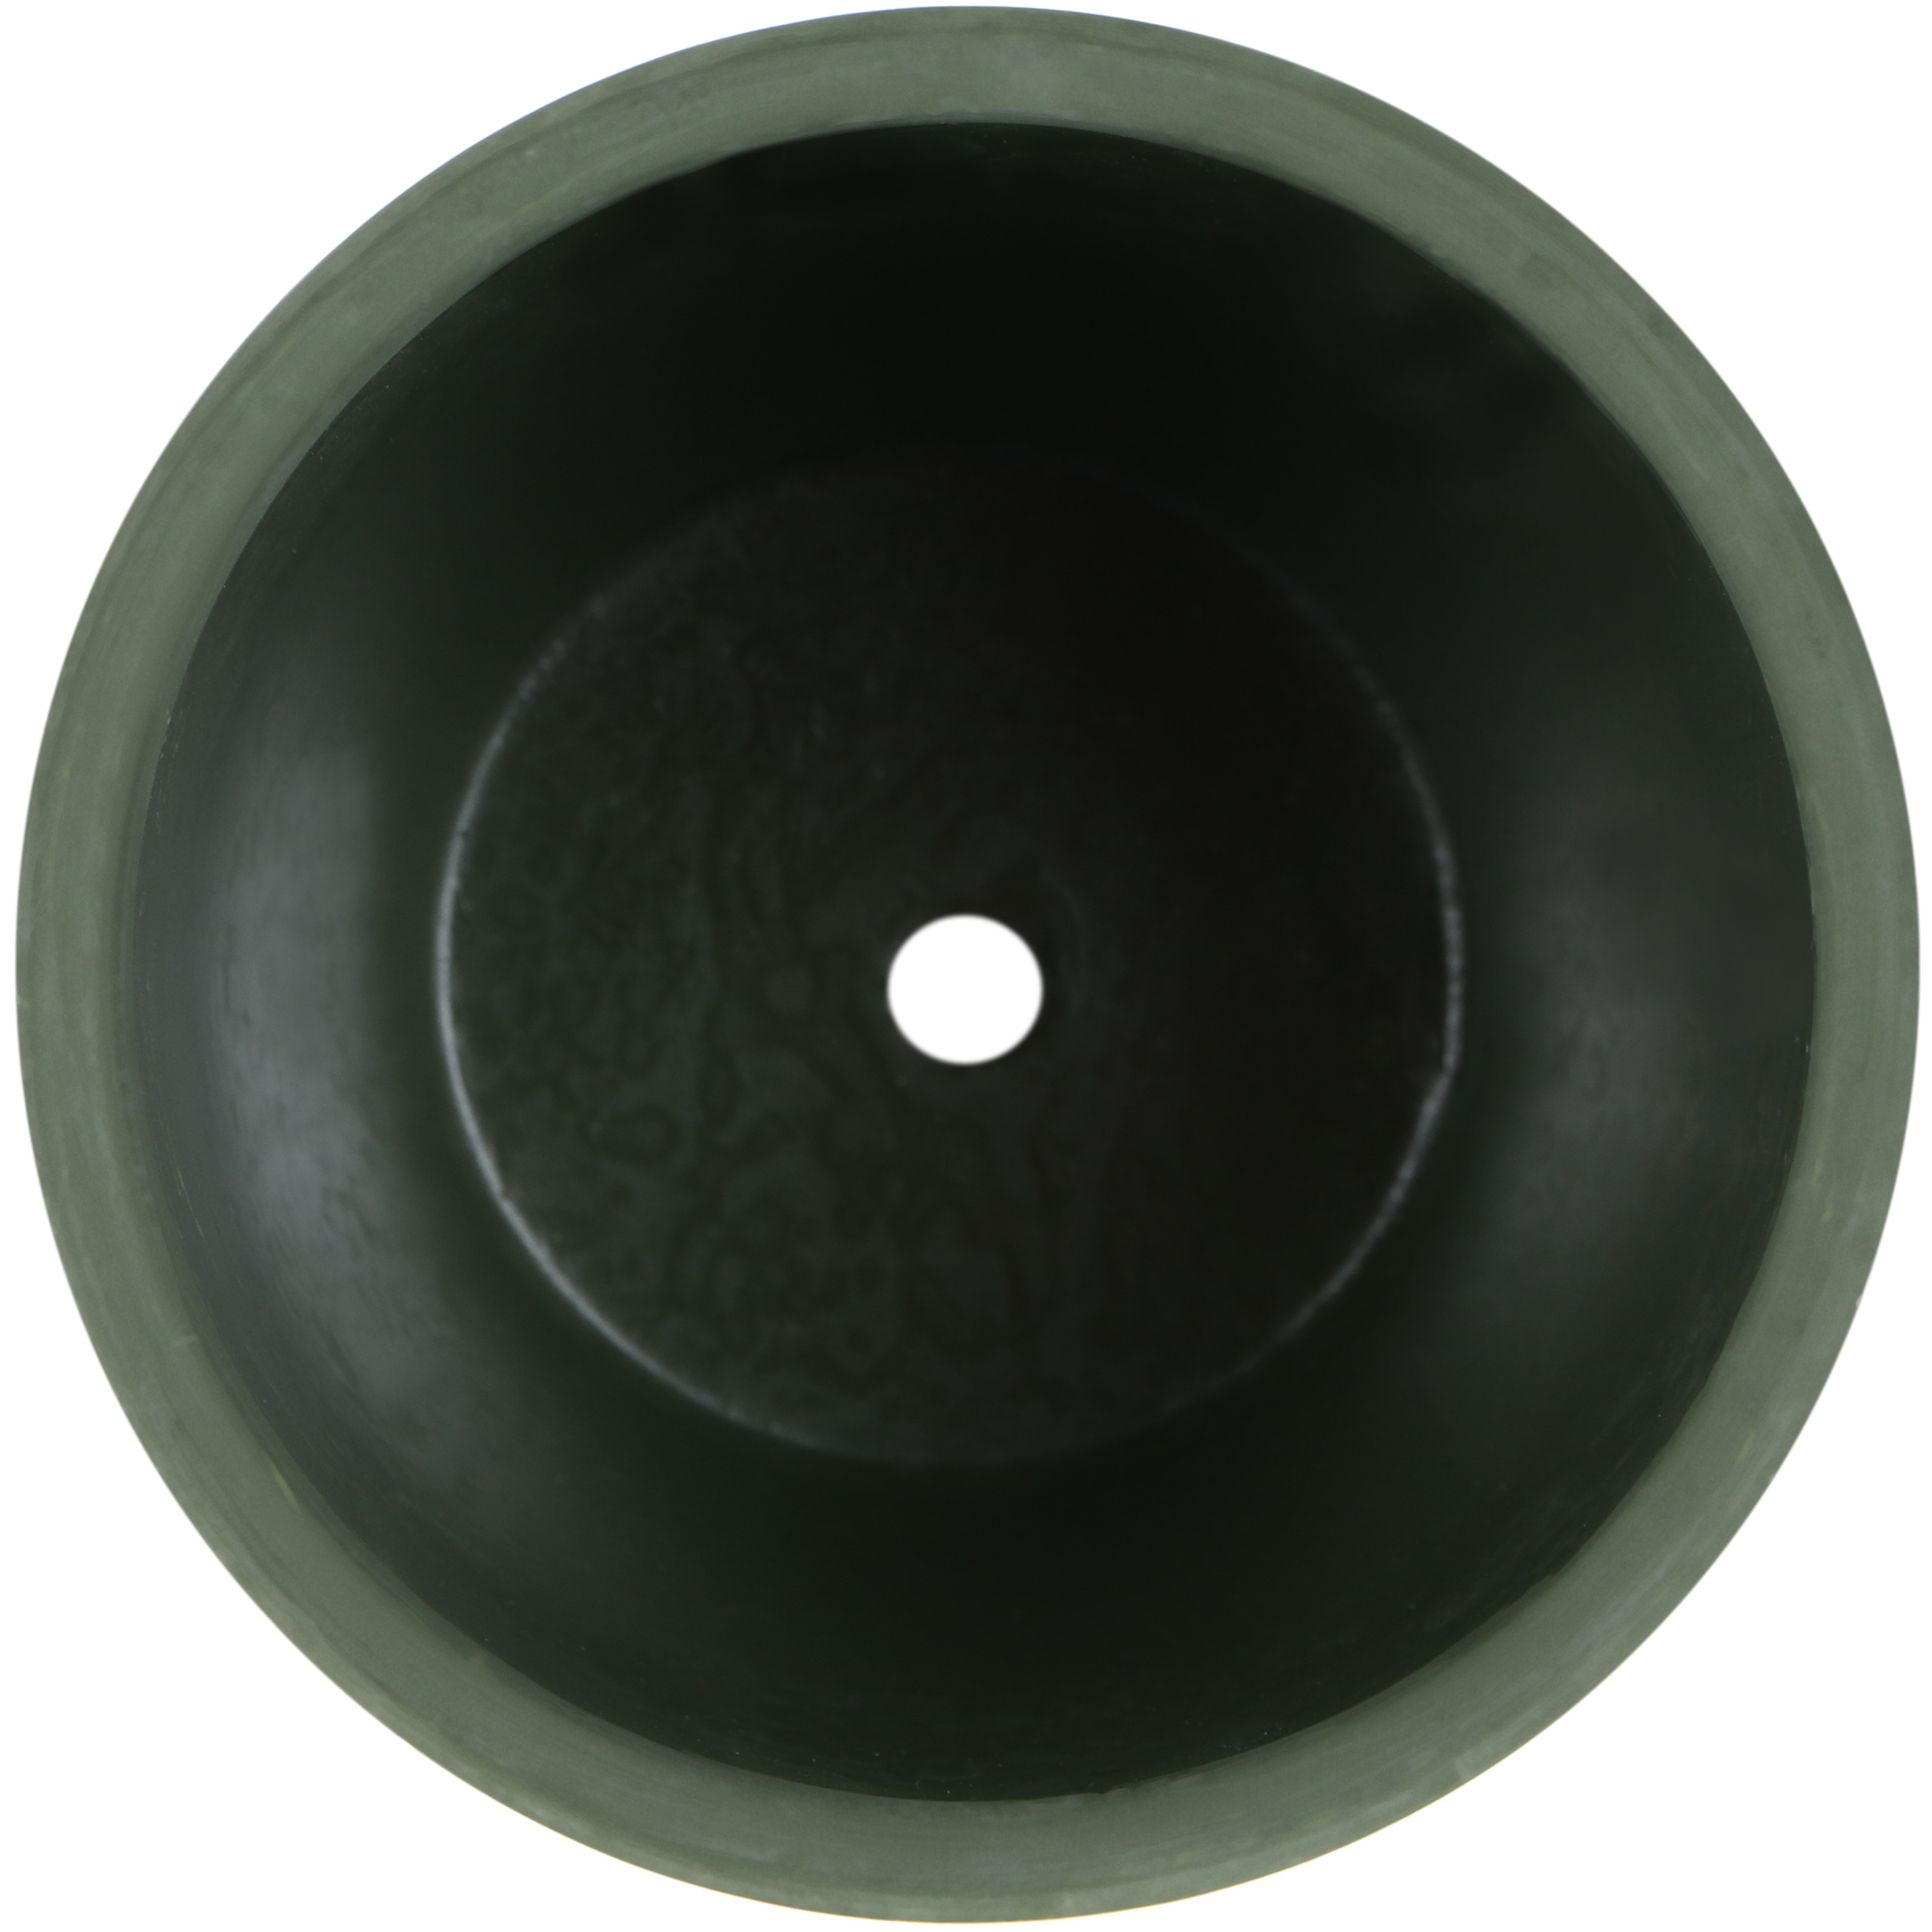 Горшок для цветов In color с поддоном диаметр 16 см зеленый - фото 3